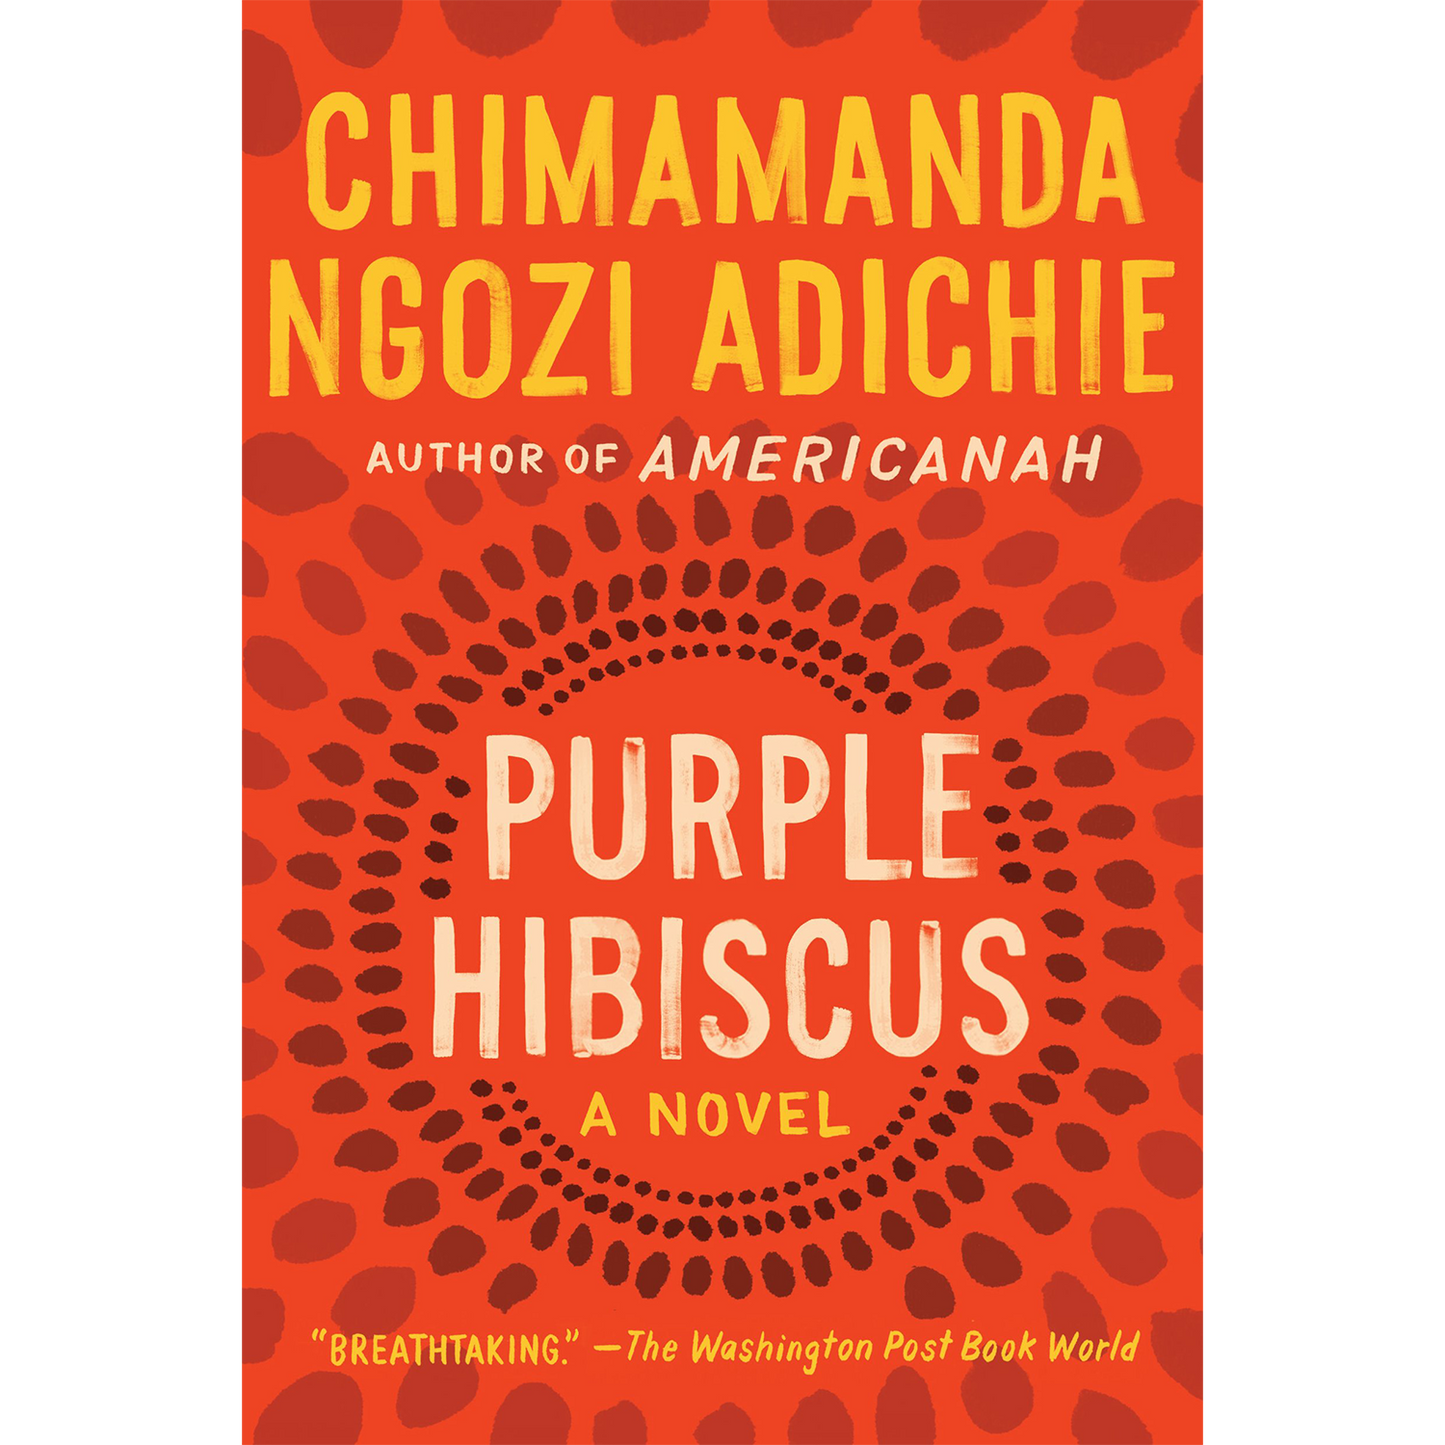 Purple Hibiscus (Paperback)